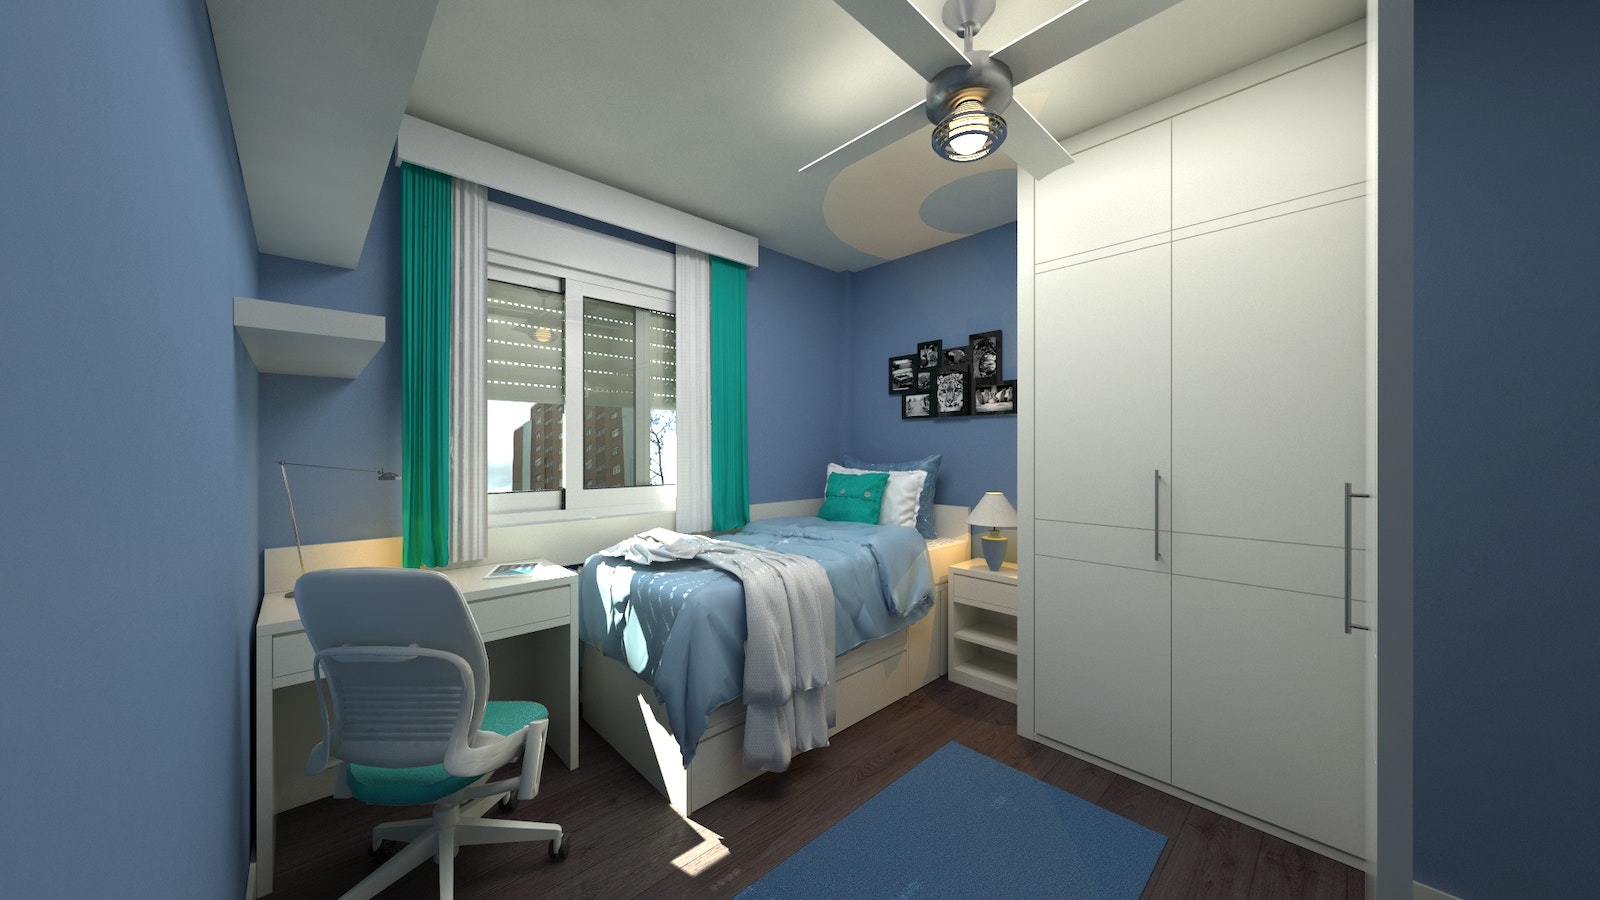 Łóżko metalowe nowoczesne: Nowoczesne i designerskie łóżko metalowe do Twojej sypialni